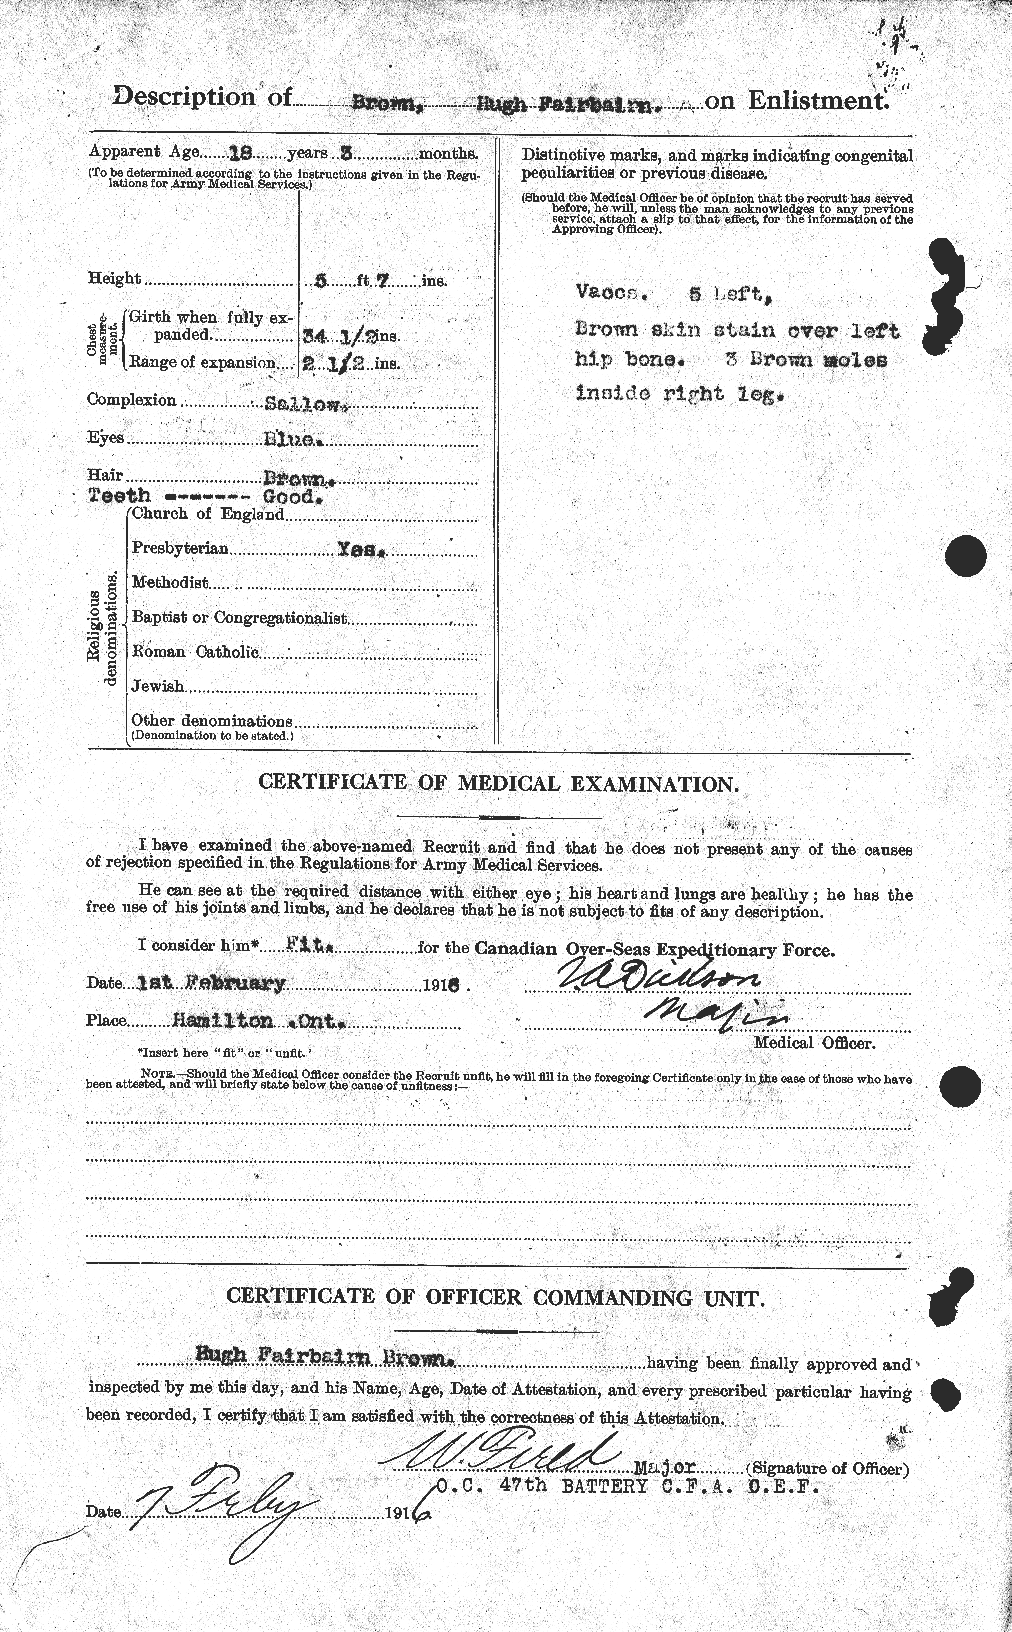 Dossiers du Personnel de la Première Guerre mondiale - CEC 265647b